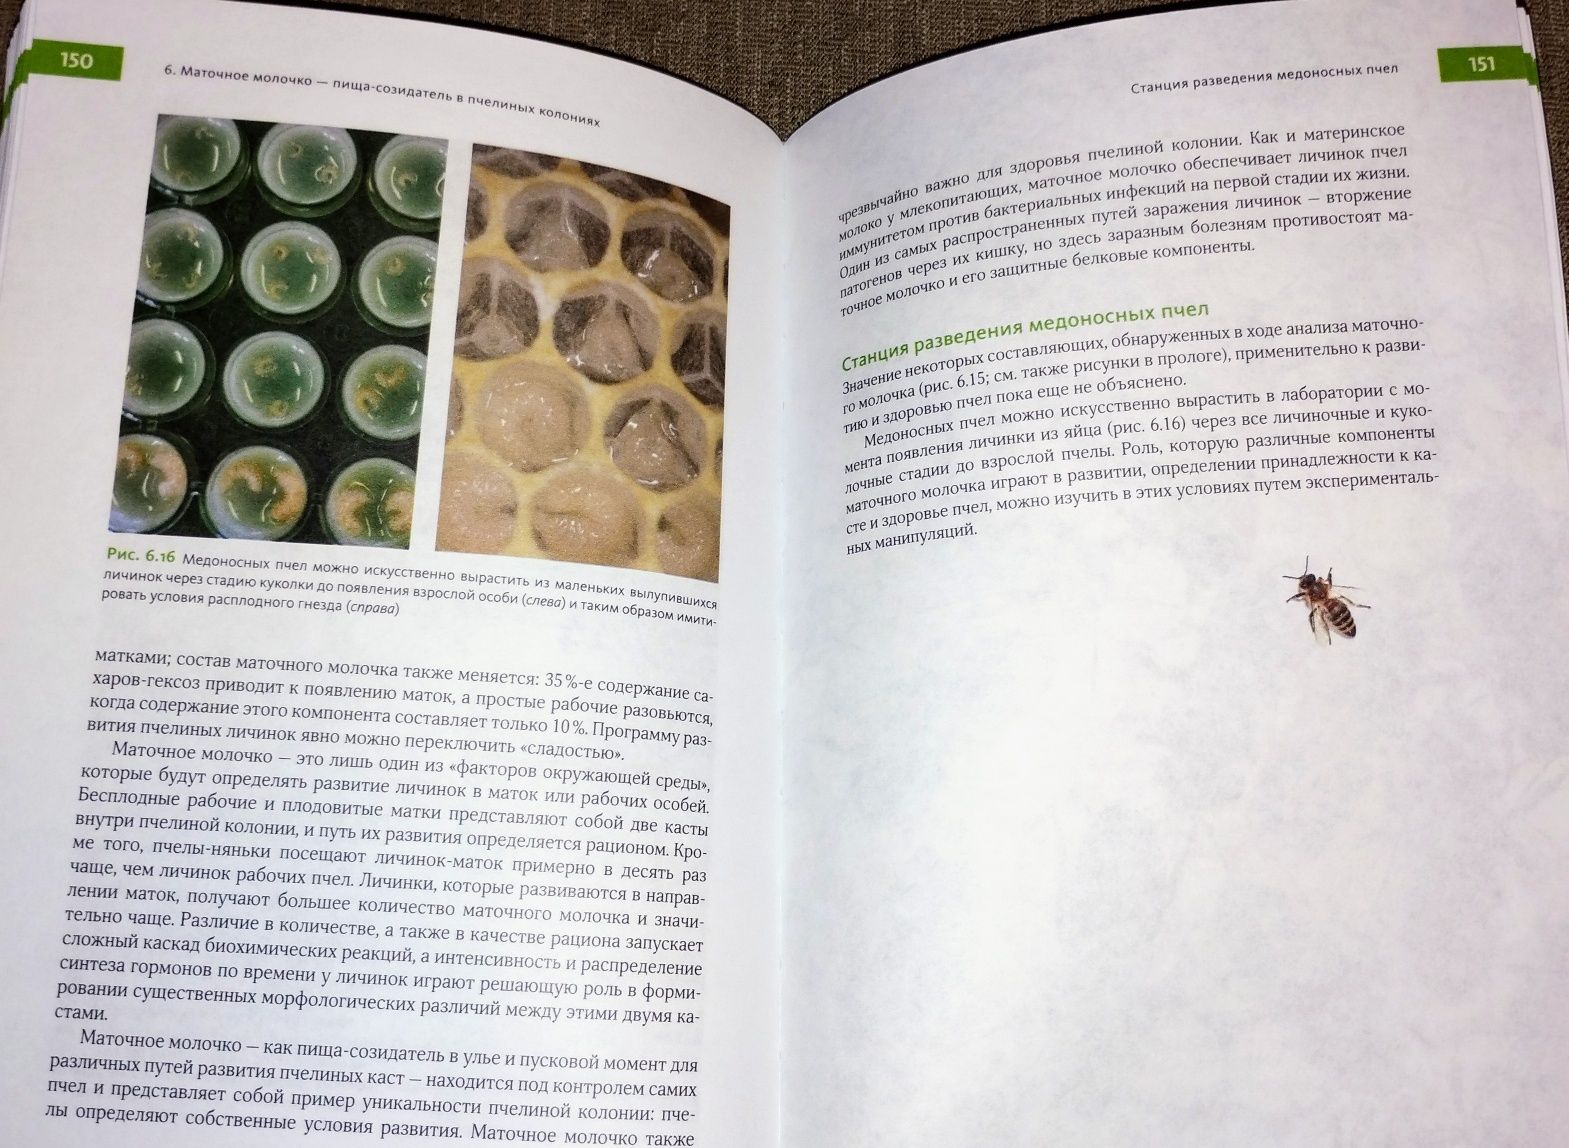 Биология суперорганизма: Феномен медоносной пчелы (+цв. иллюстрации)